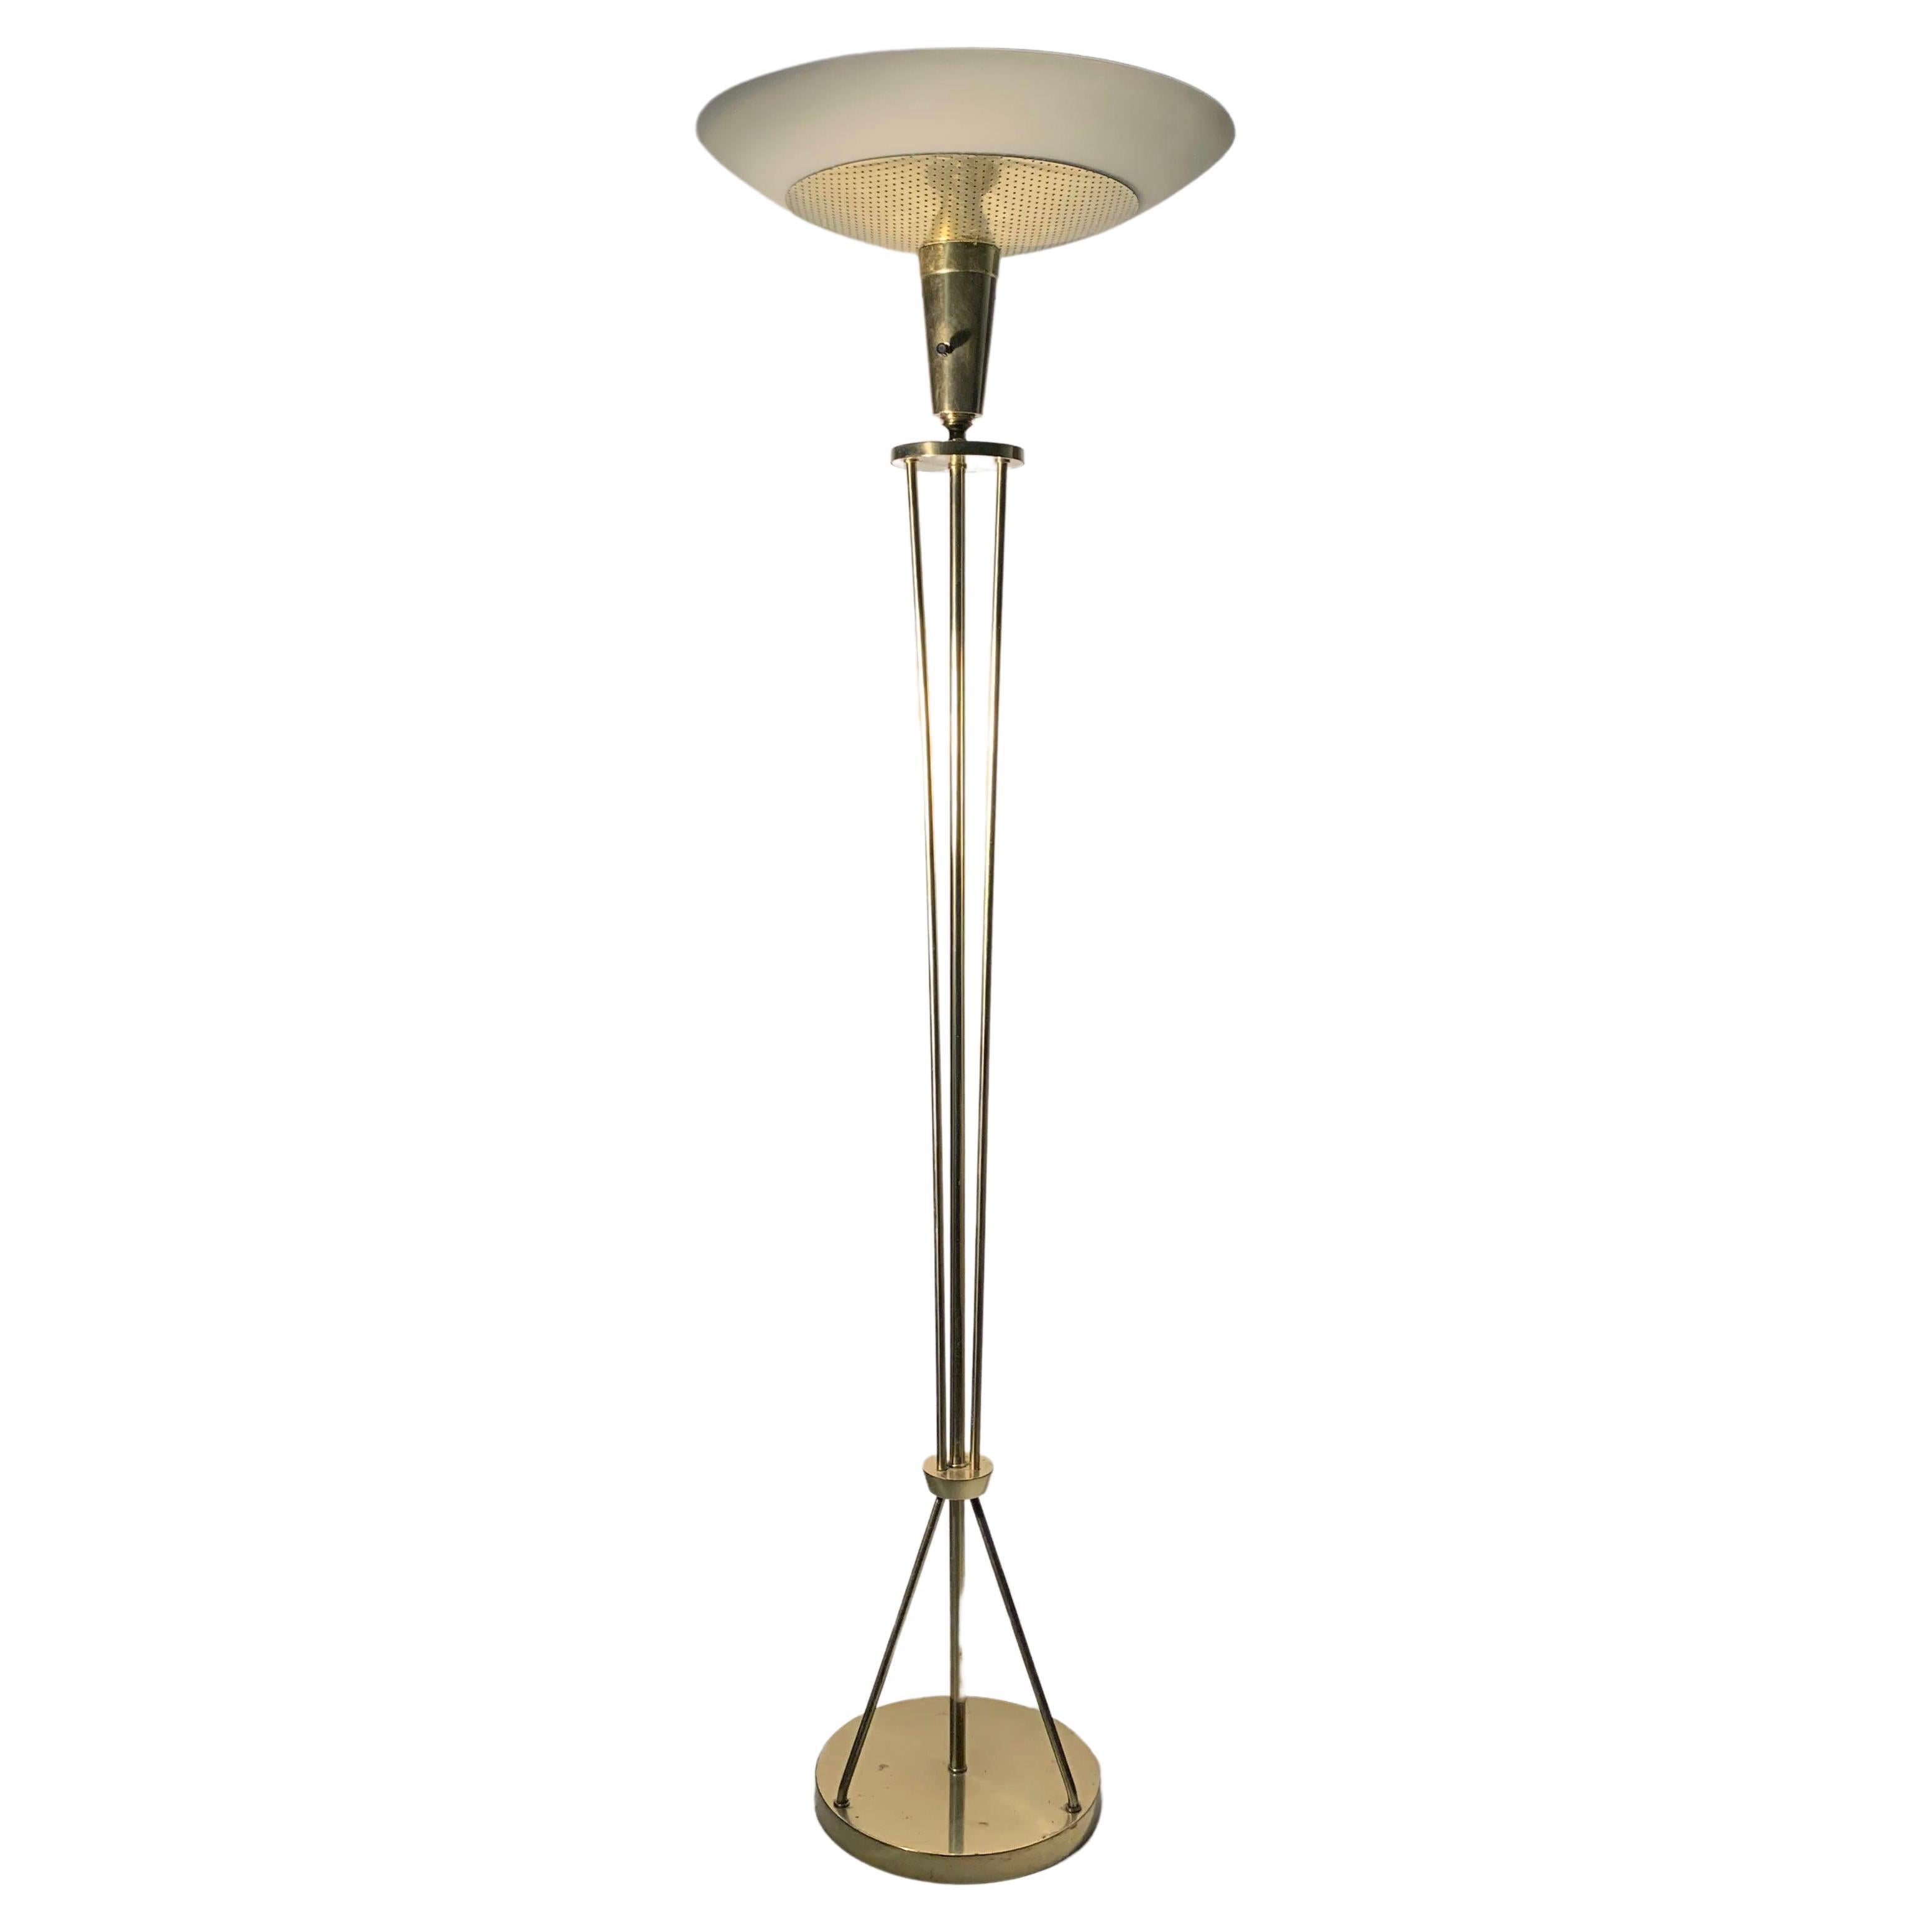 A Vintage Atomic Sputnik Torchere Floor Lamp in the manner of Arredoluce